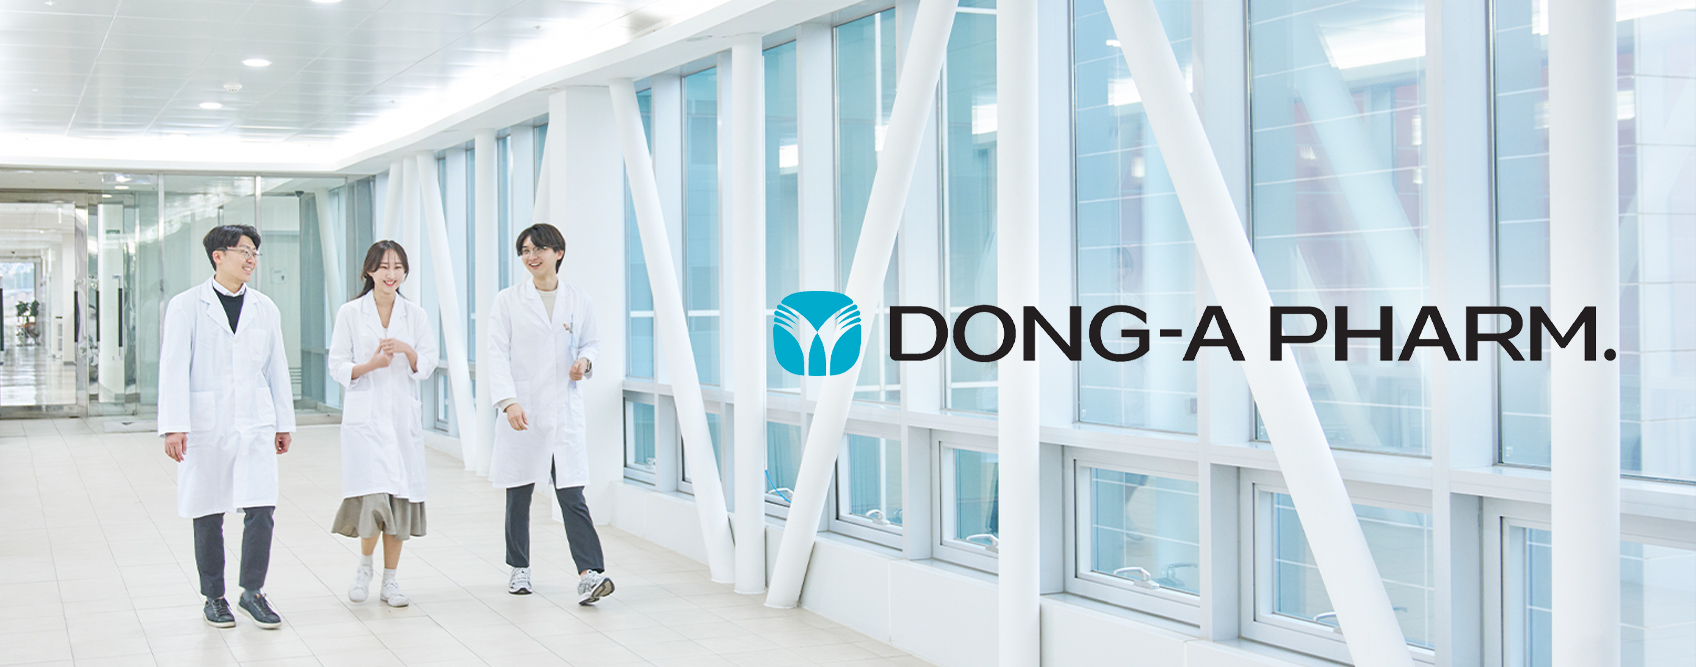 DONG-A PHARM. 동아제약 기업 홈페이지 구축